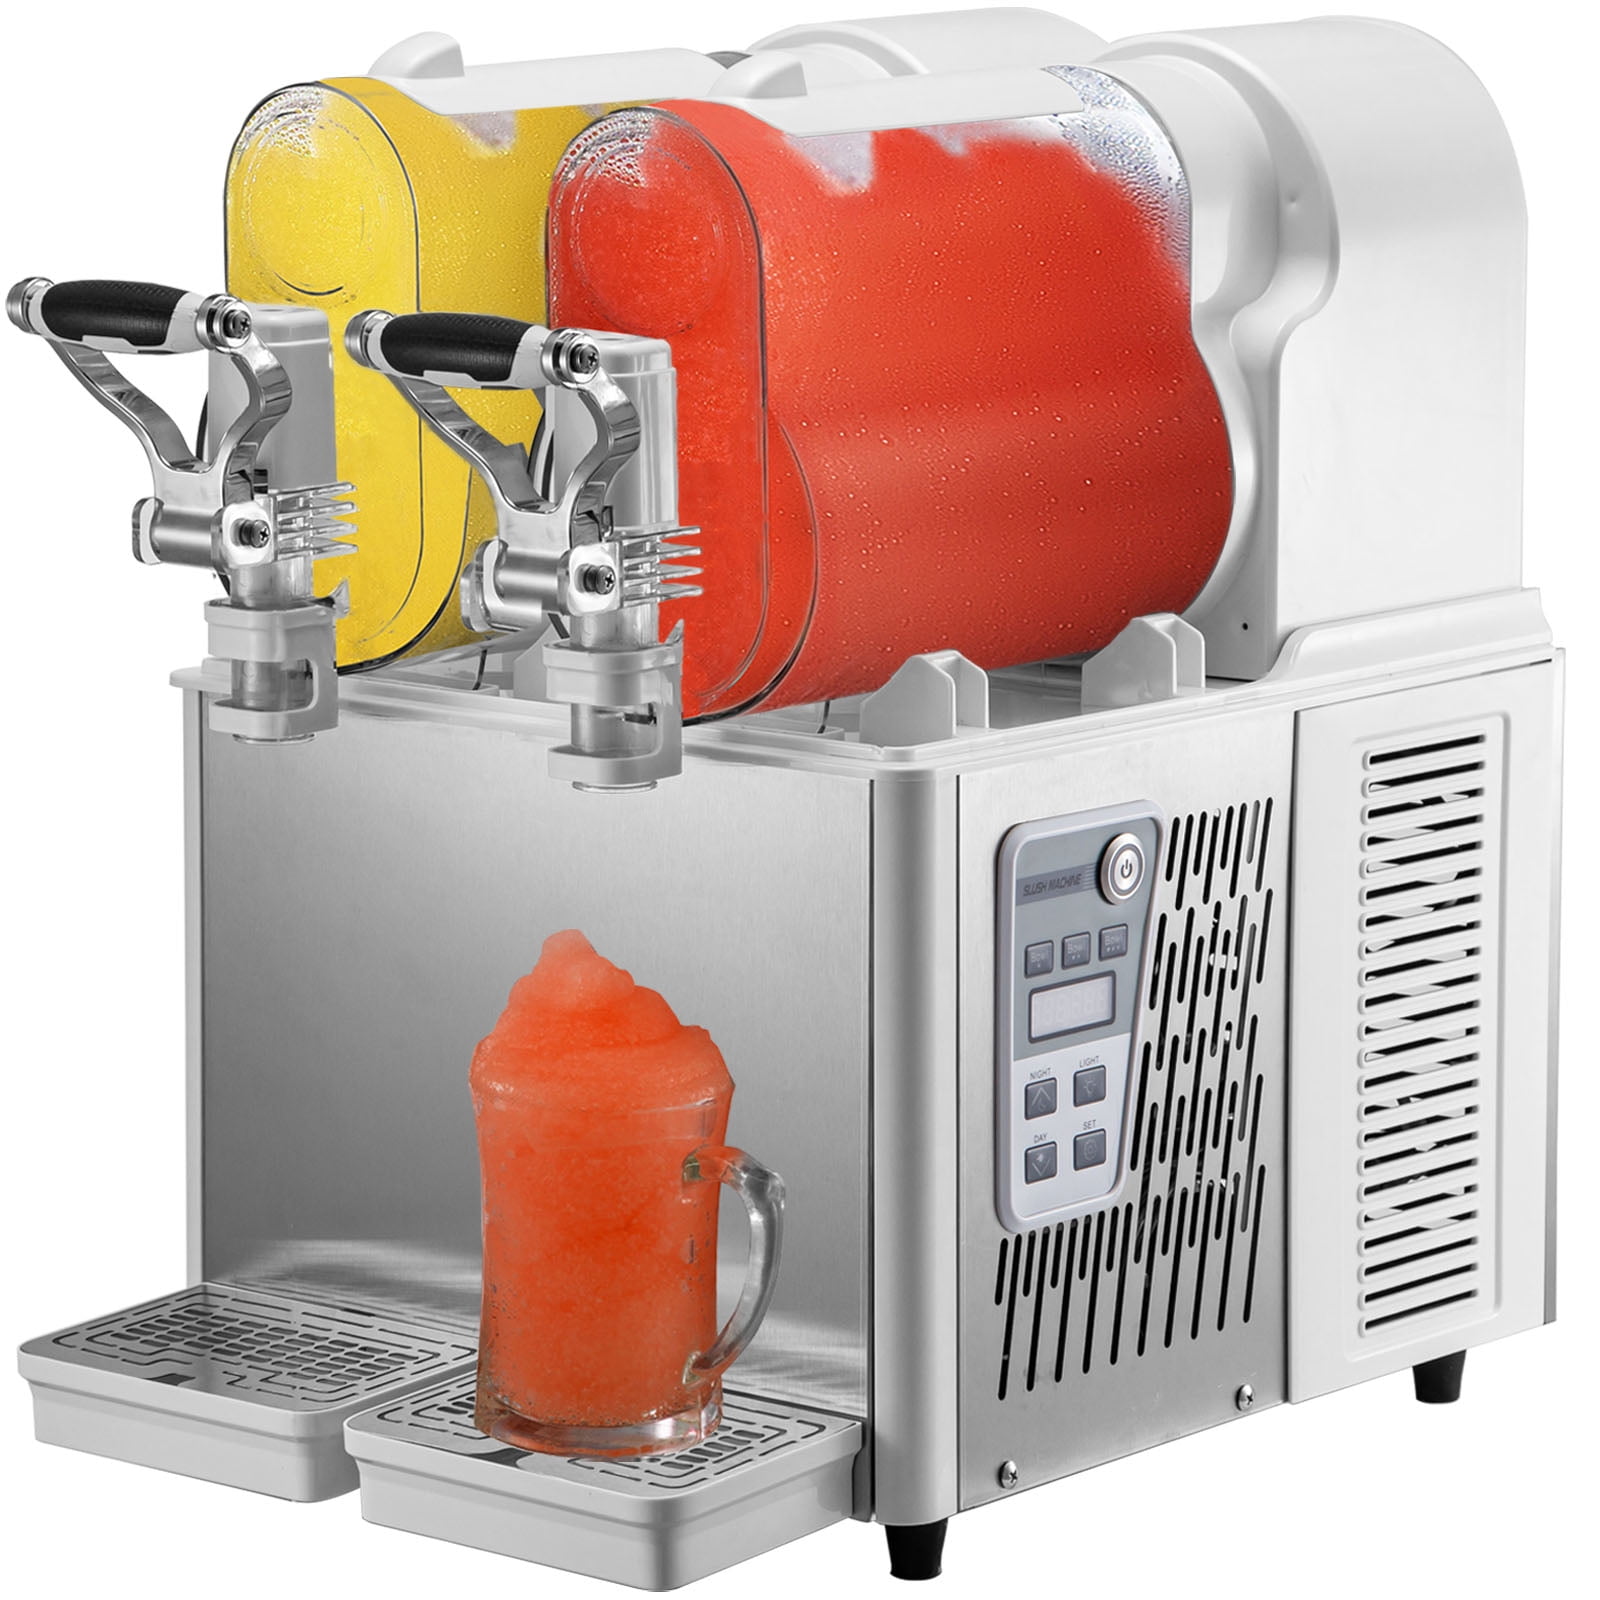 BENTISM Commercial Slushy Machine, 6L 705W 110V Stainless Steel Margarita  Smoothie Frozen Drink Maker, Slushie Machine 